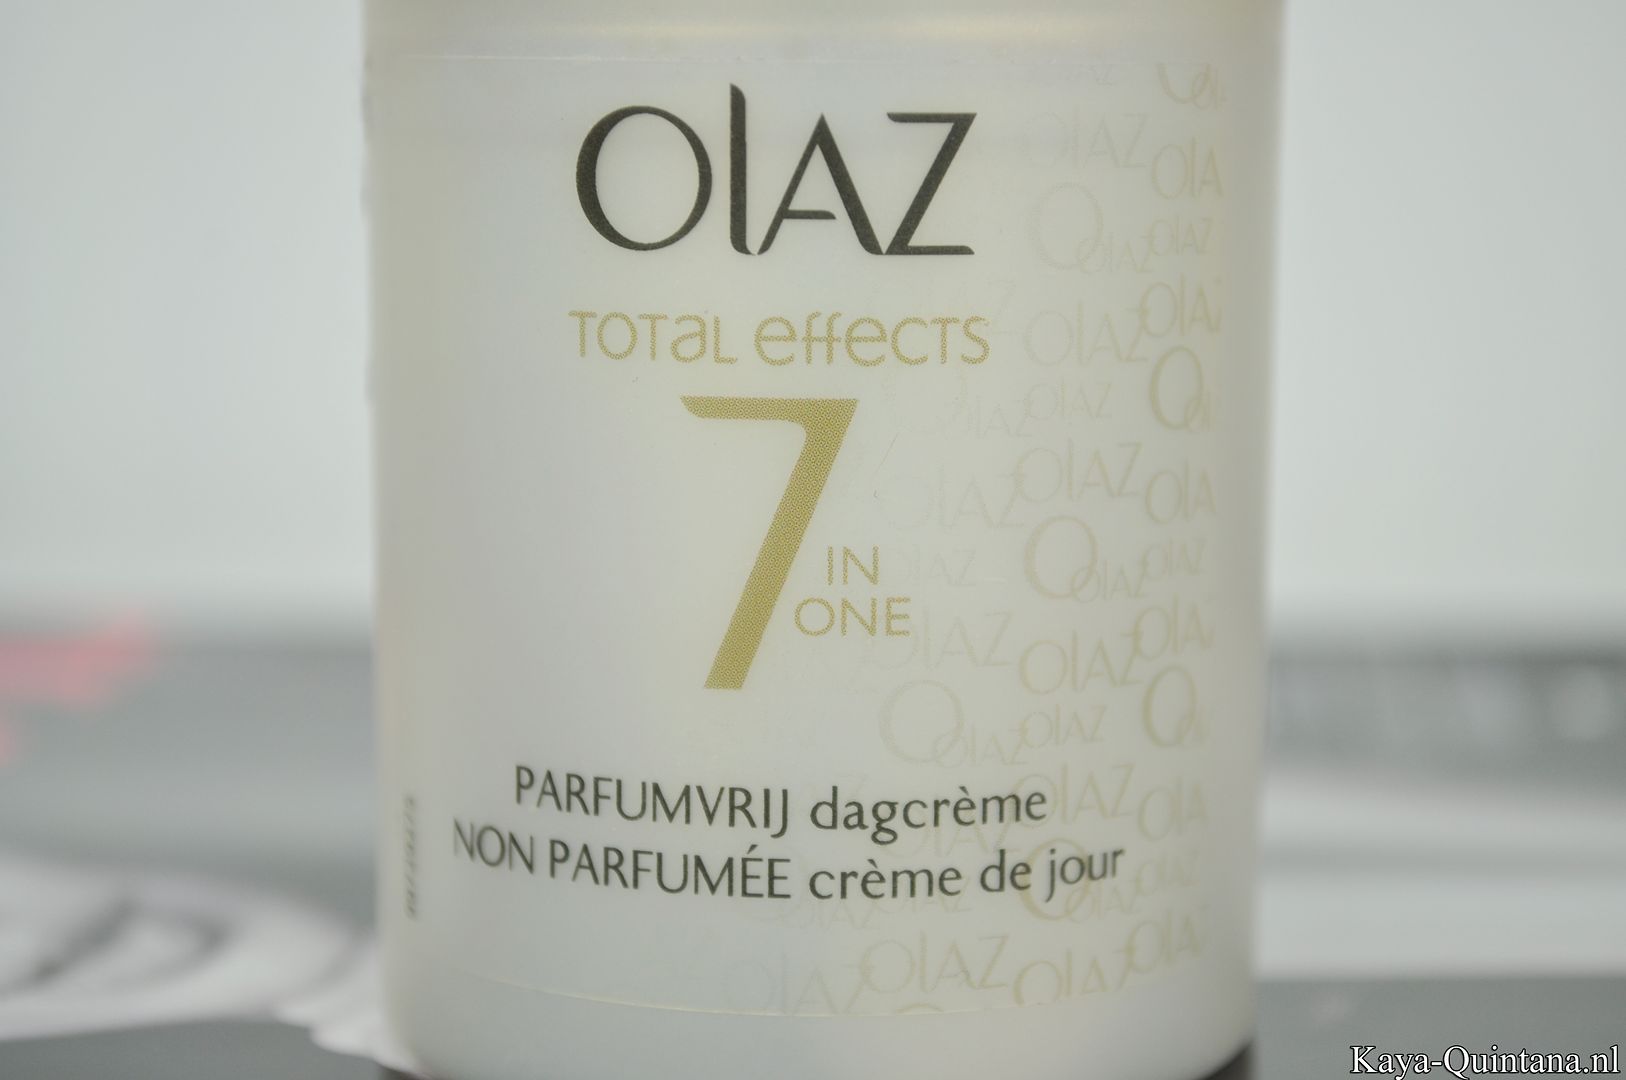 olaz total effects 7 in one parfumvrij